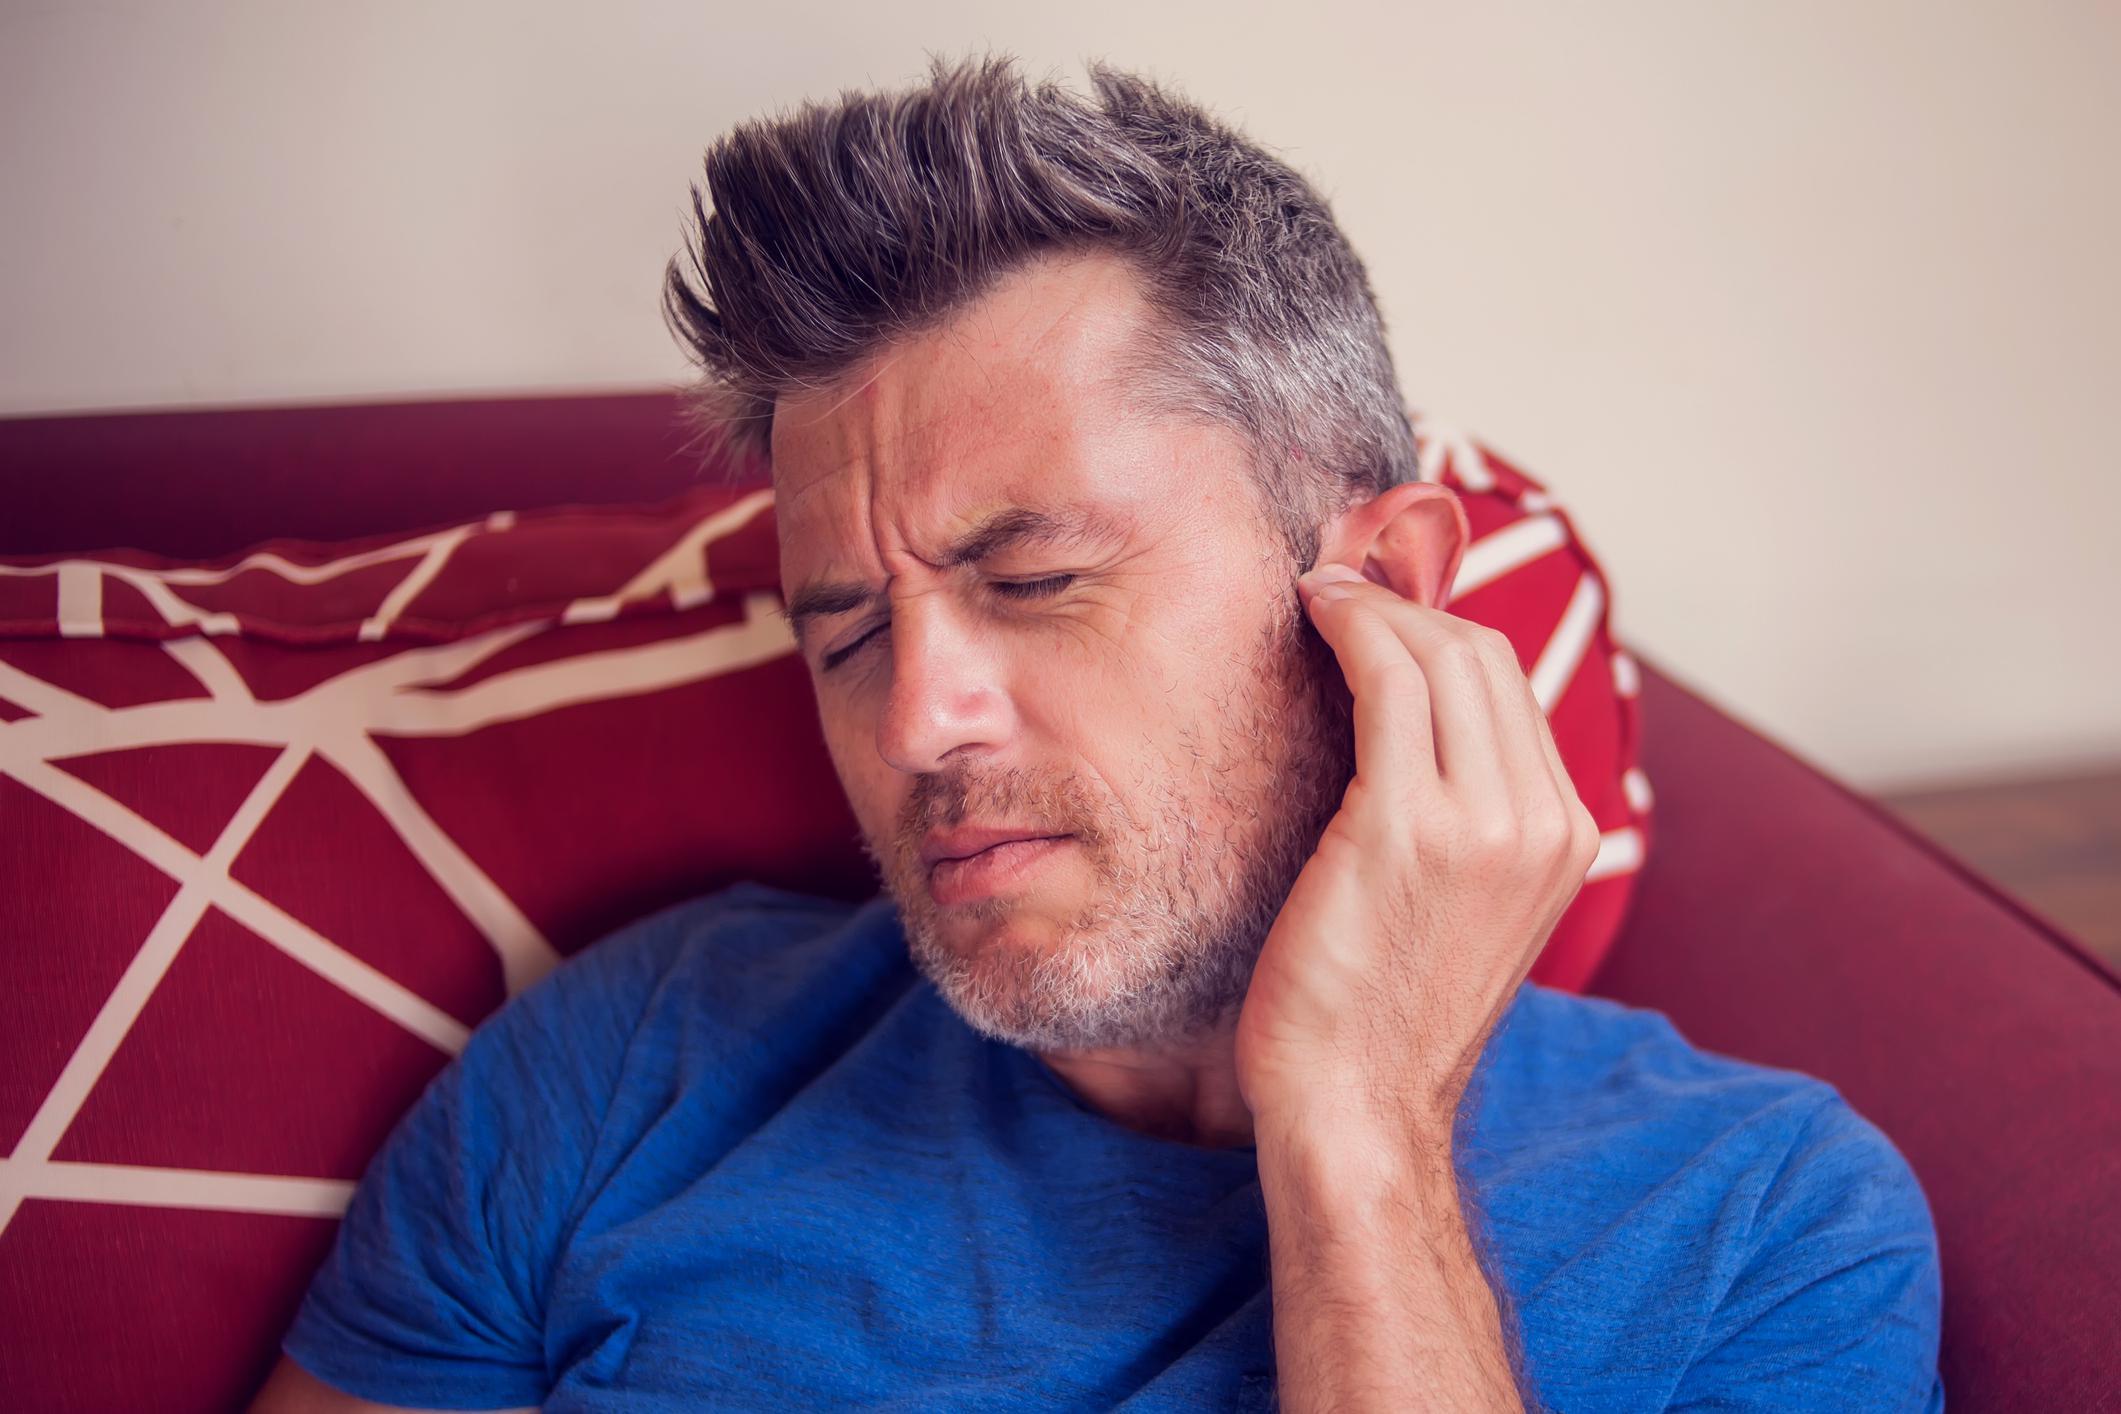 Kulak ağrısı neden olur Kulak ağrısına ne iyi gelir Kulak ağrısını geçirmenin yöntemleri